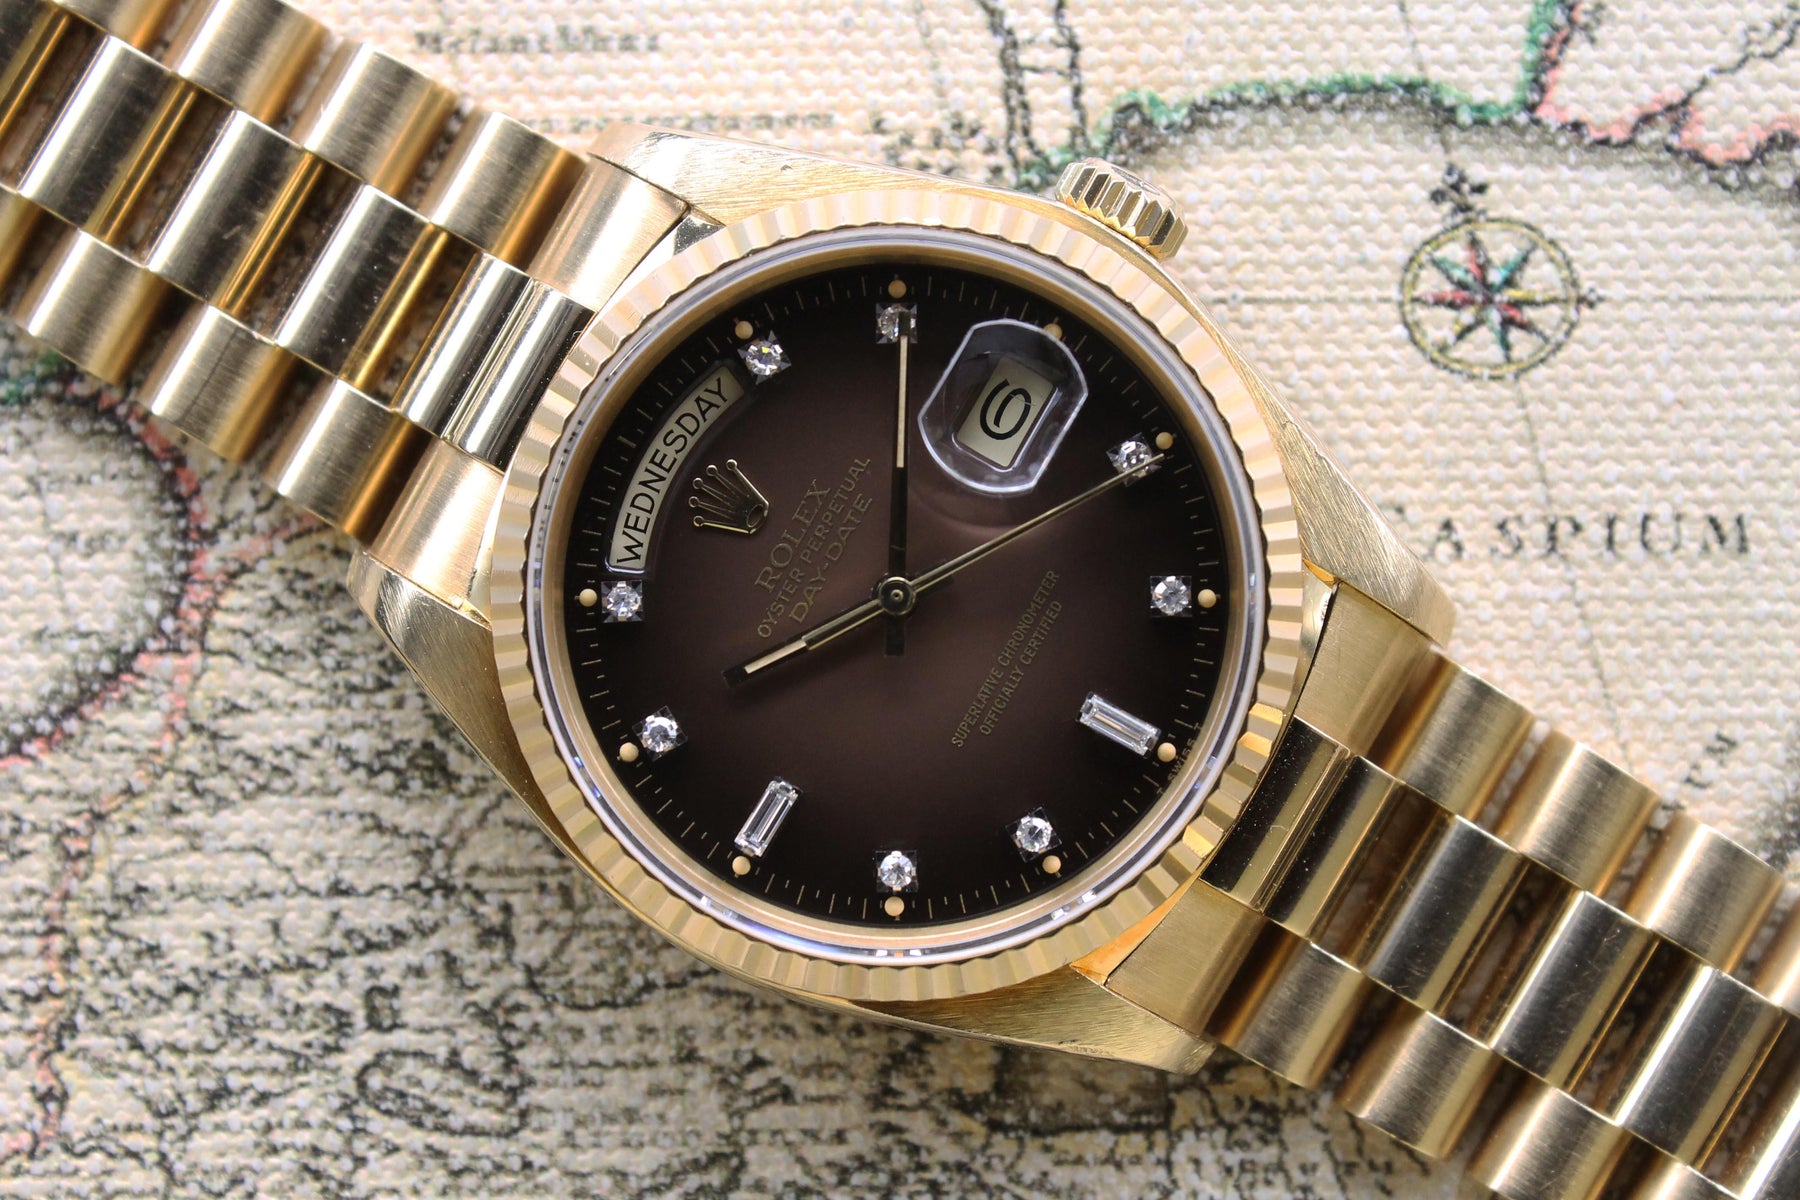 1979 Rolex Day Date Tobacco Brown Vignette Diamond Dial  Ref. 18038